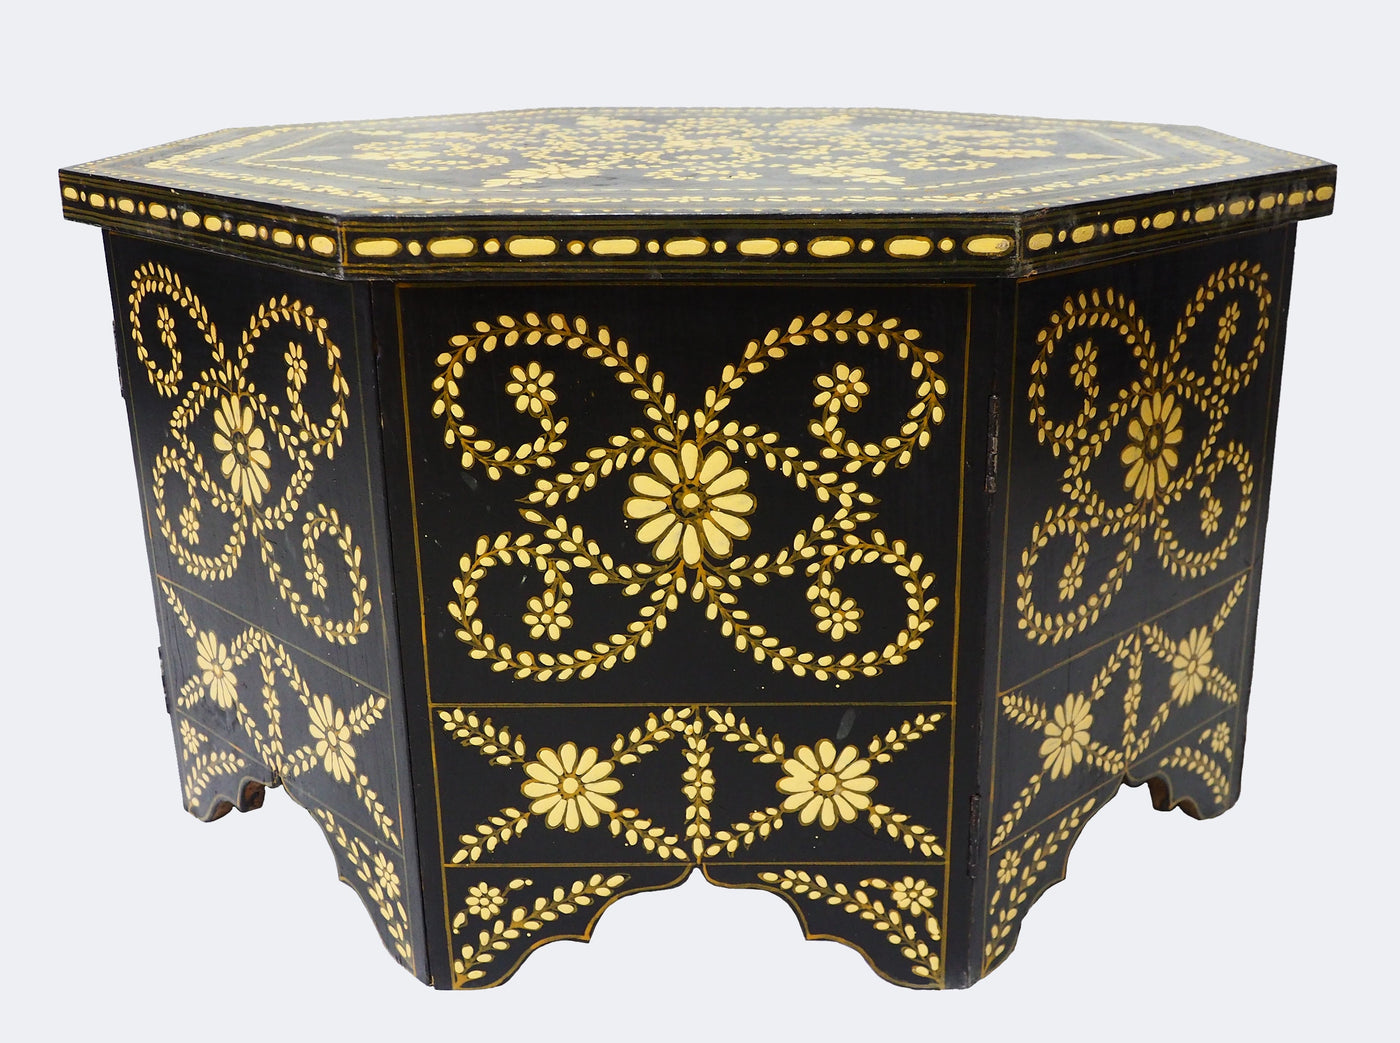 80x80 cm Massivholz handbemalte Couchtisch kolonialstil Wohnzimmertisch Tisch Teetisch beisteltisch aus Afghanistan zusammenklappbar  Nr:A Tische Orientsbazar   